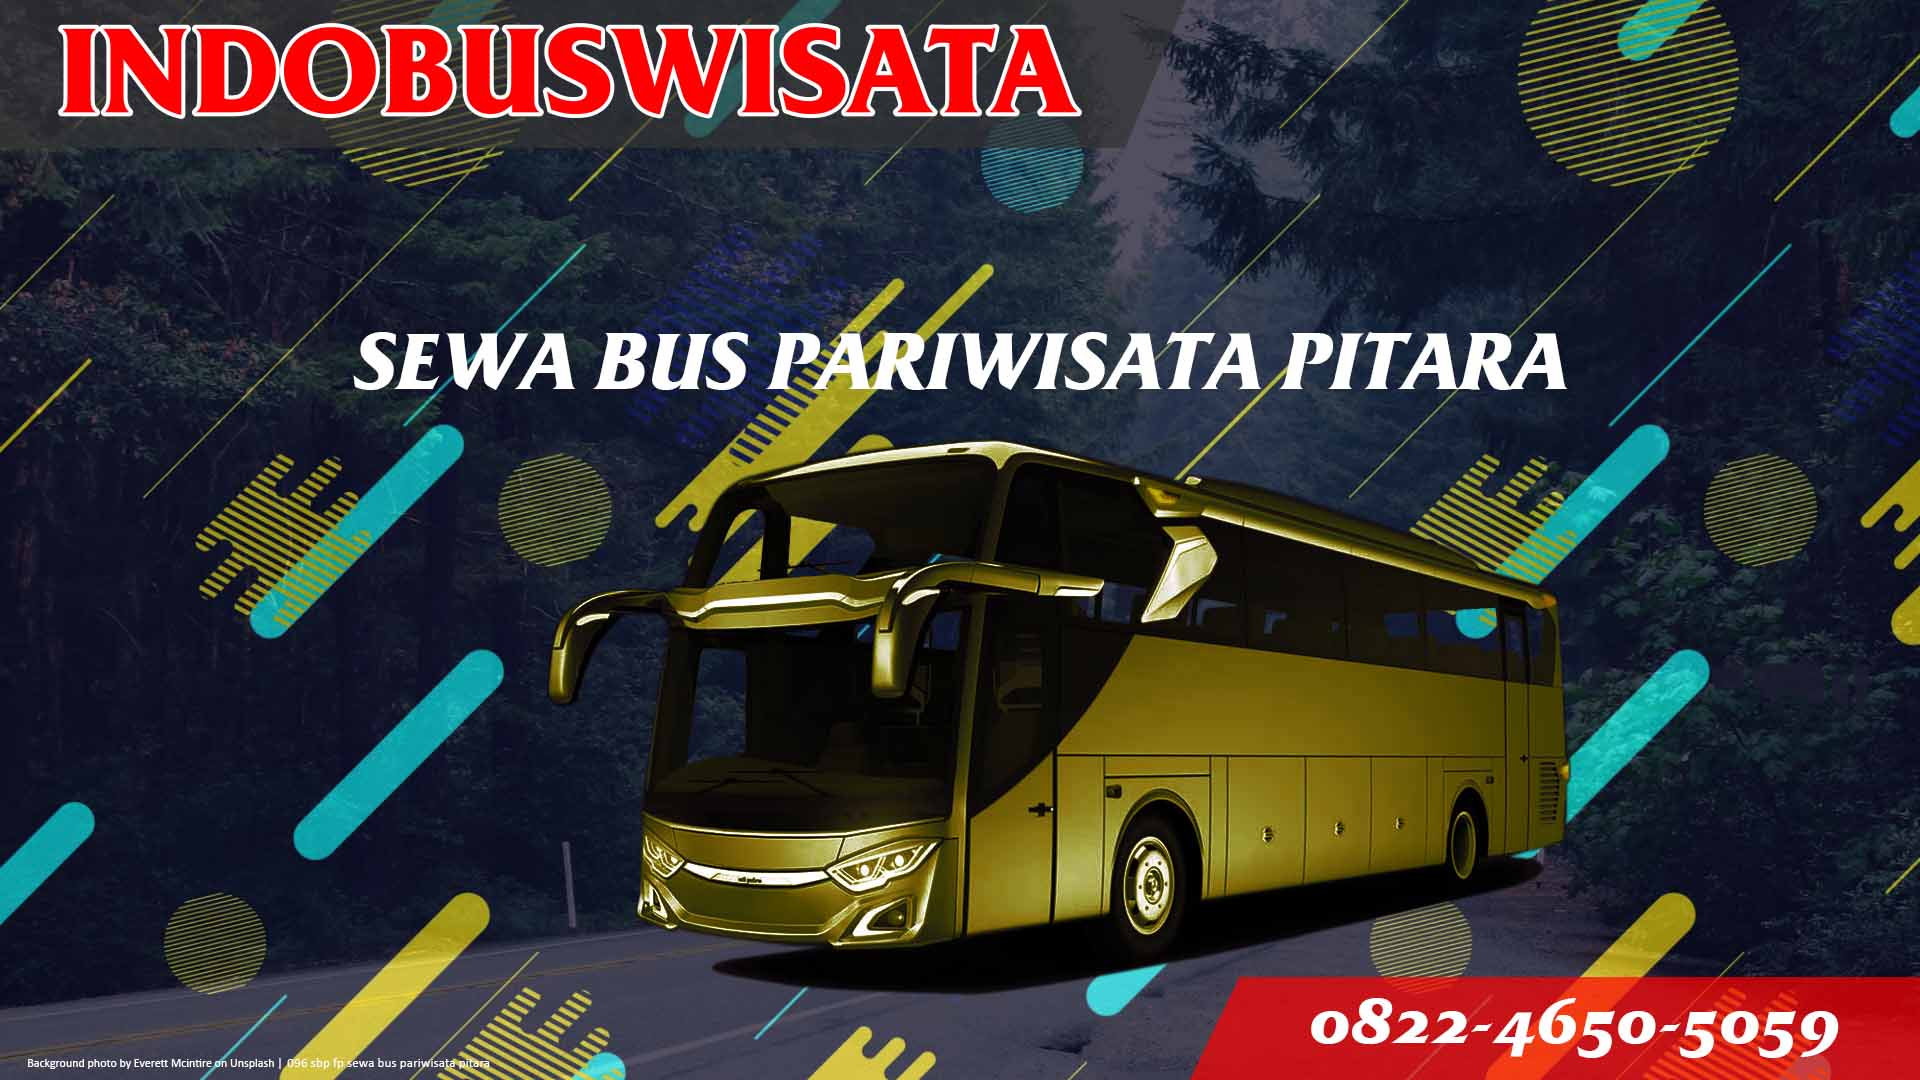 096 Sbp Fp Sewa Bus Pariwisata Pitara Indobuswisata